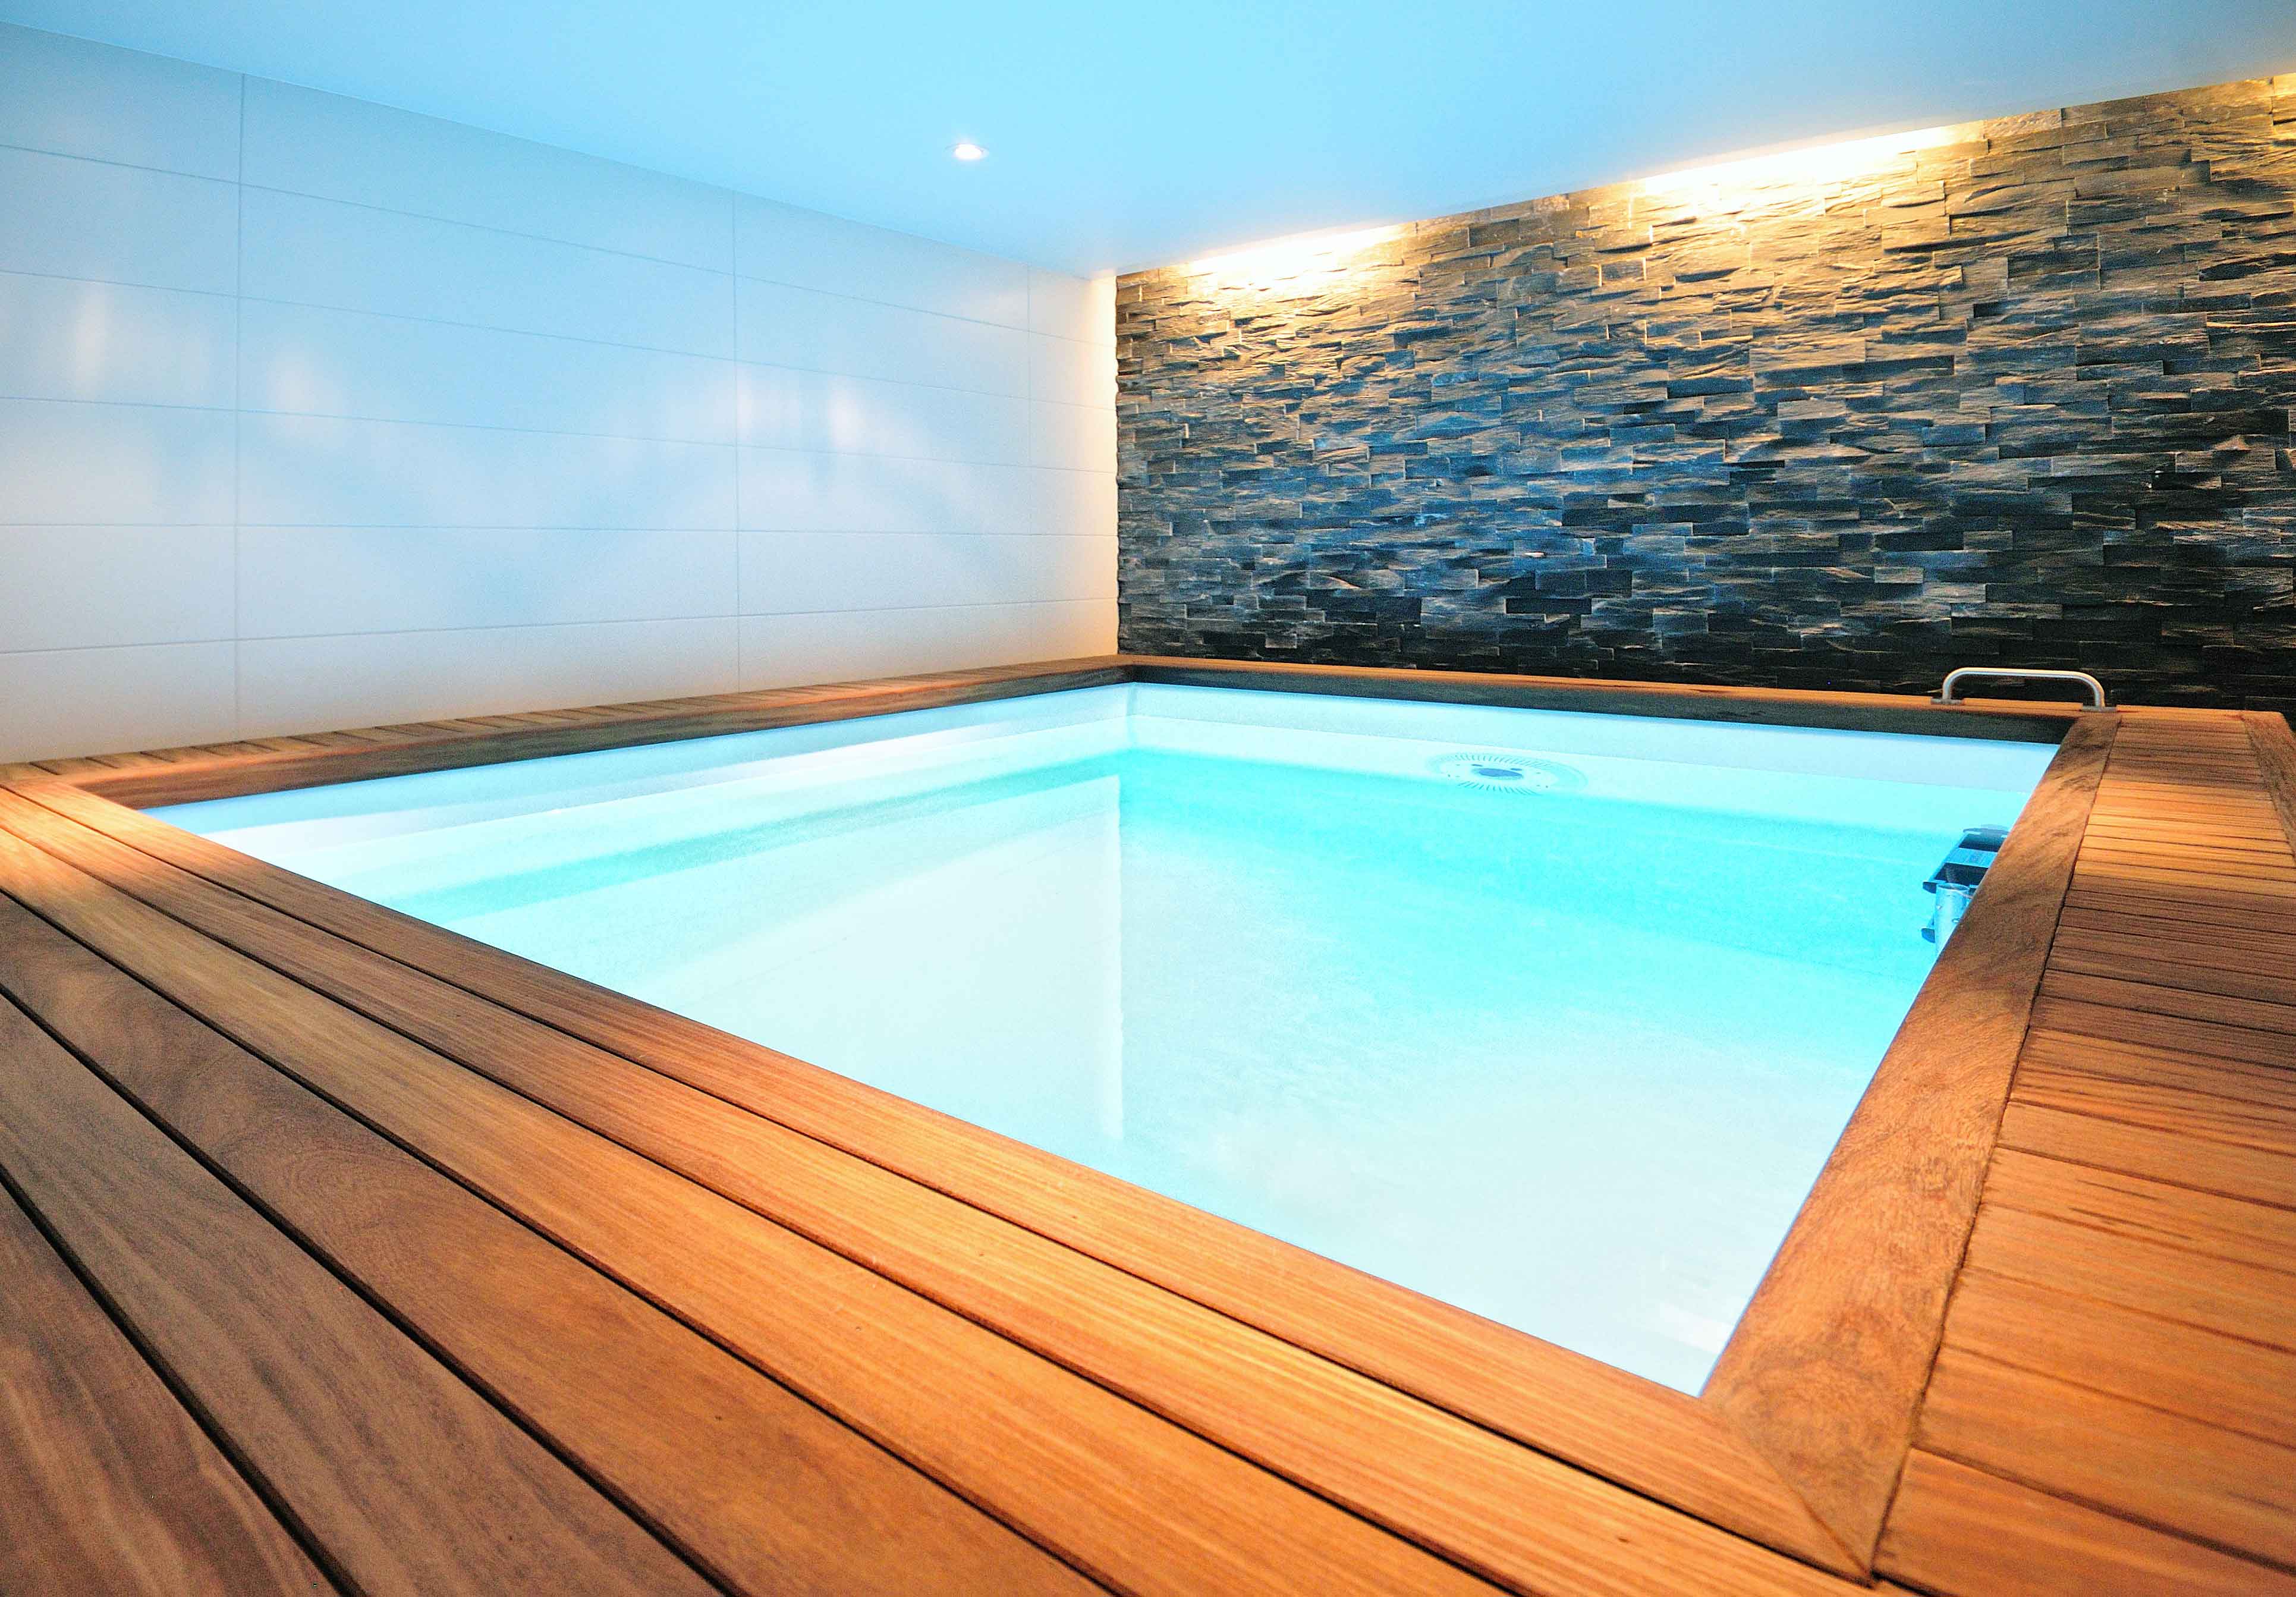 Ontwerp voor spa wellness in villa zeist door amsterdamse architect maxim winkelaar. Zwembad met tegenstroom en houten sauna.